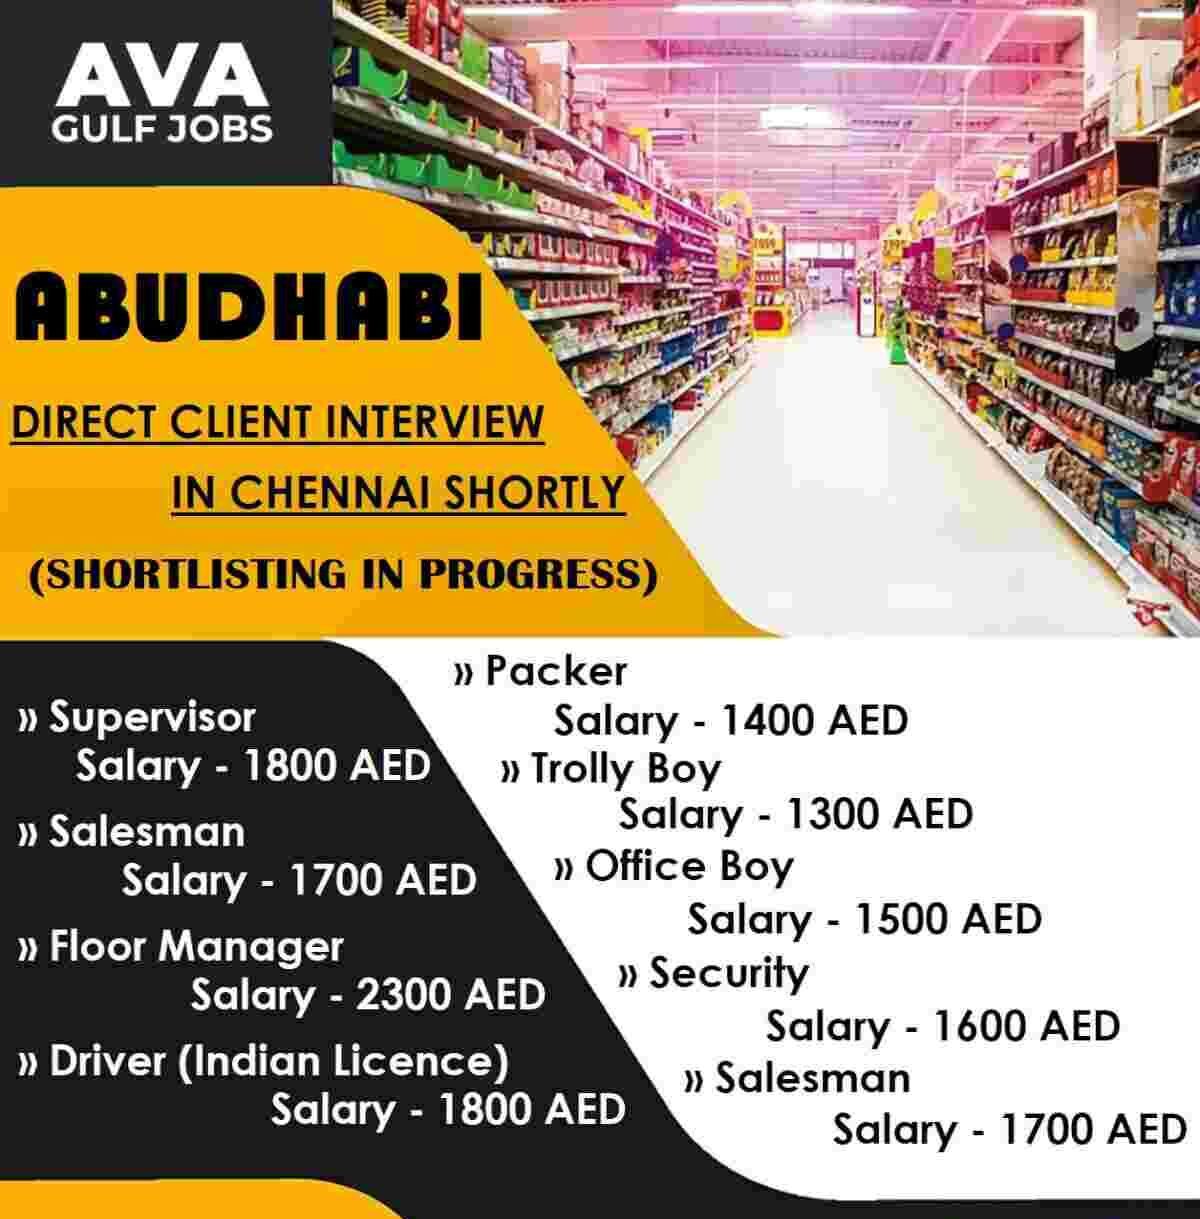 Ava Gulf Jobs Want for Abu Dhabi - UAE